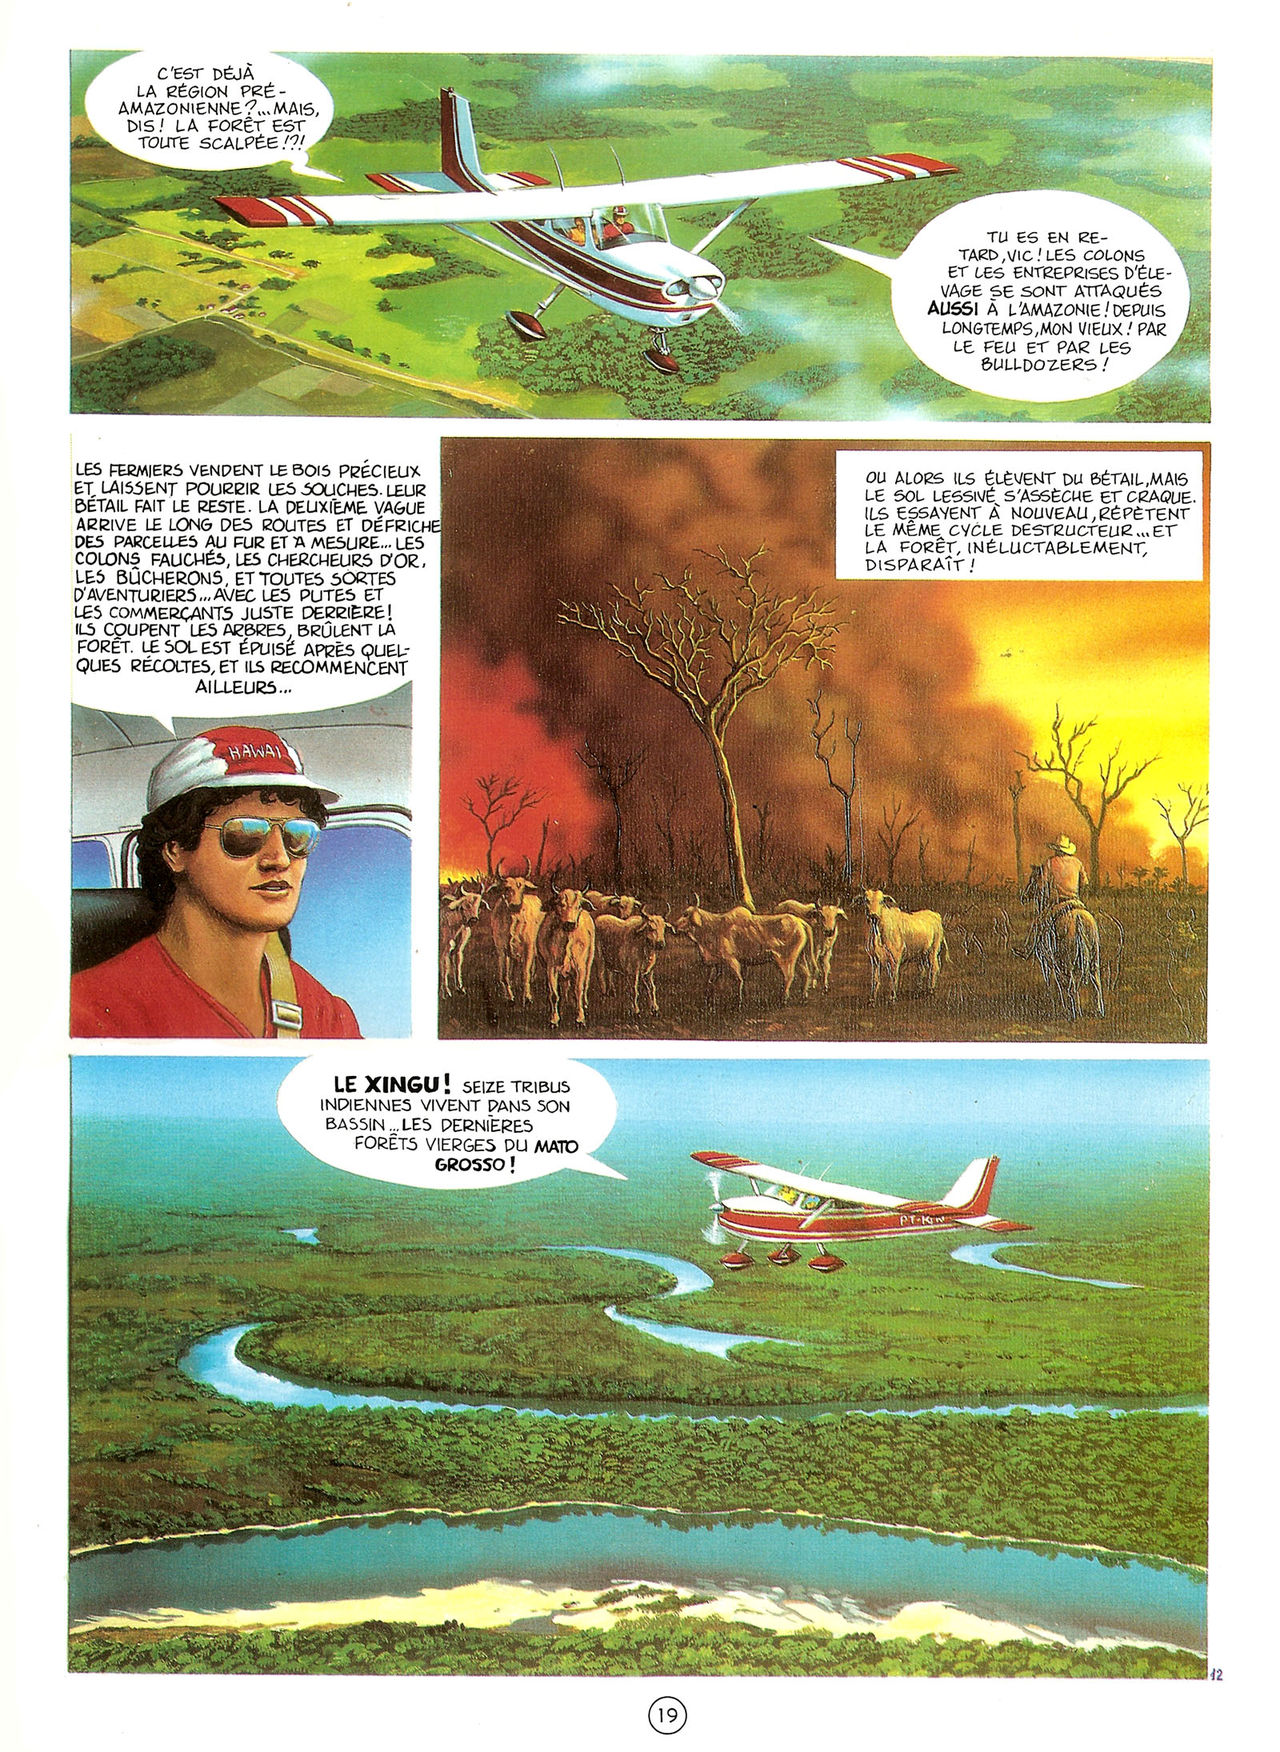 Les Aventures de Vic Voyage 05 - Brazil! numero d'image 19